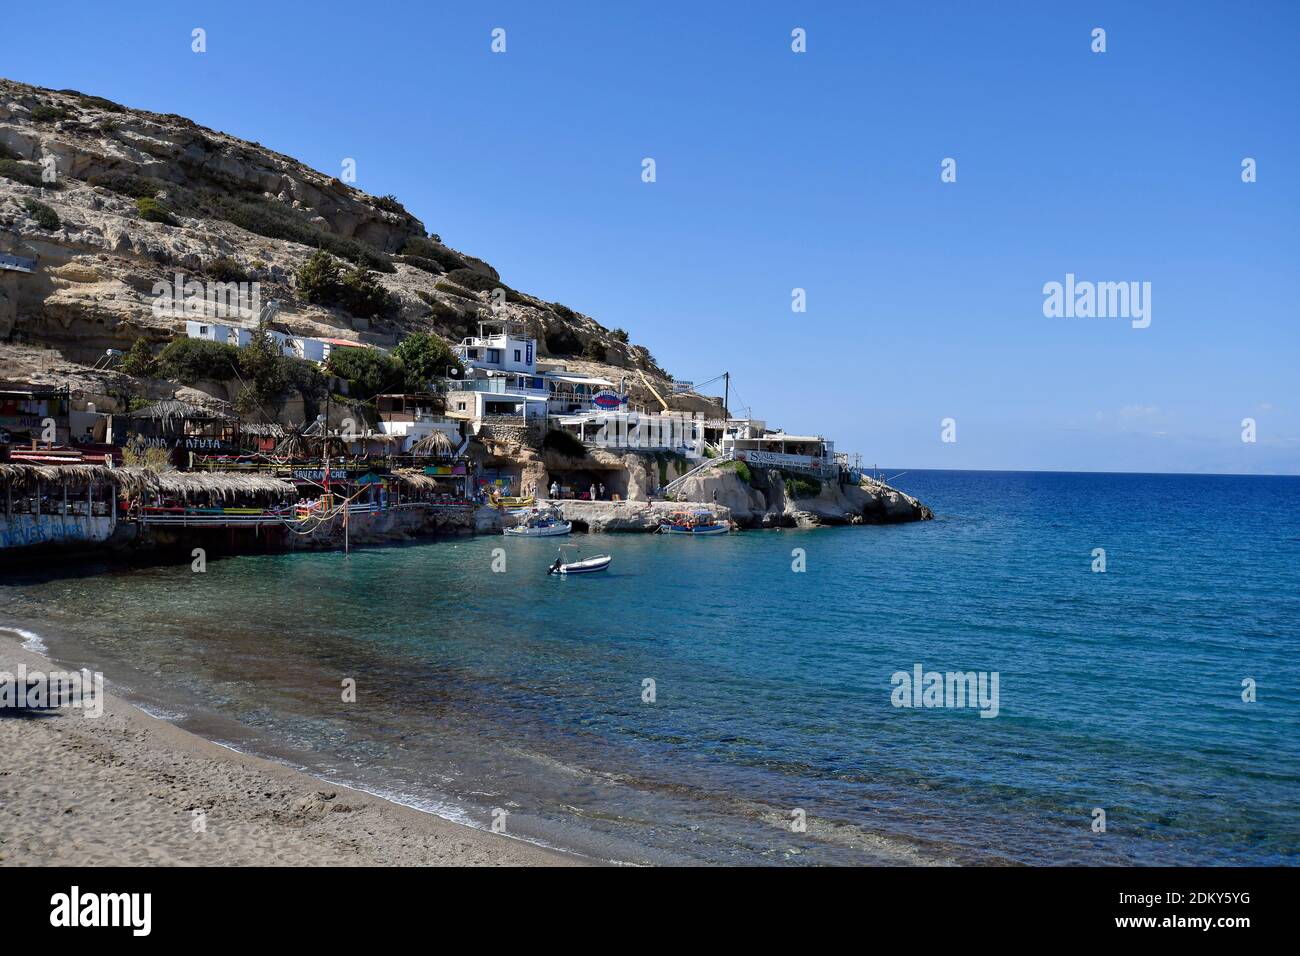 Matala, Grecia - 07 ottobre 2018: Persone non identificate e diversi ristoranti sulla riva del mare libico a Creta Foto Stock